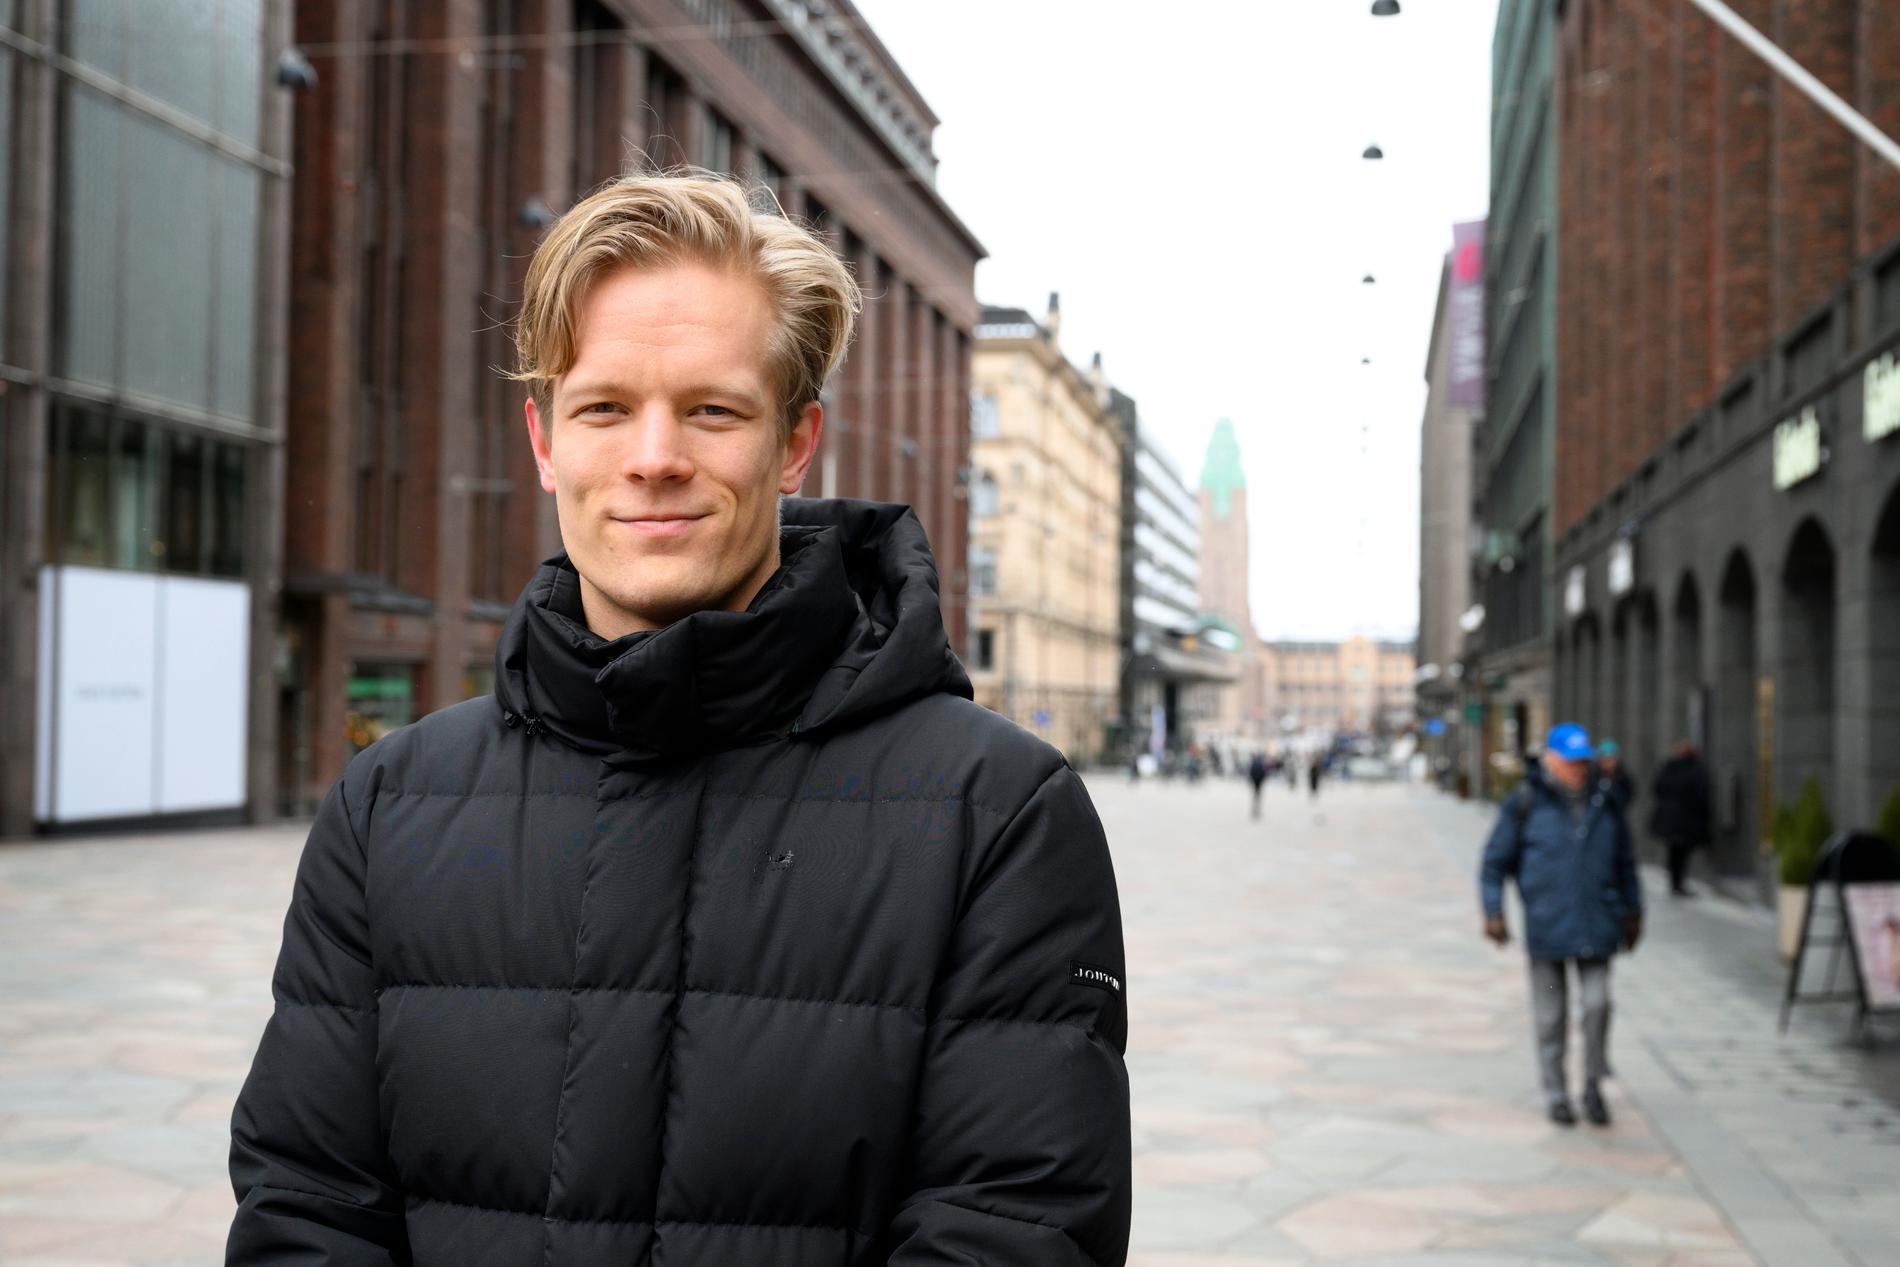 "För mig står de ekonomiska frågorna i fokus", säger 28-årige Vertti Vuohelainen från Helsingfors.